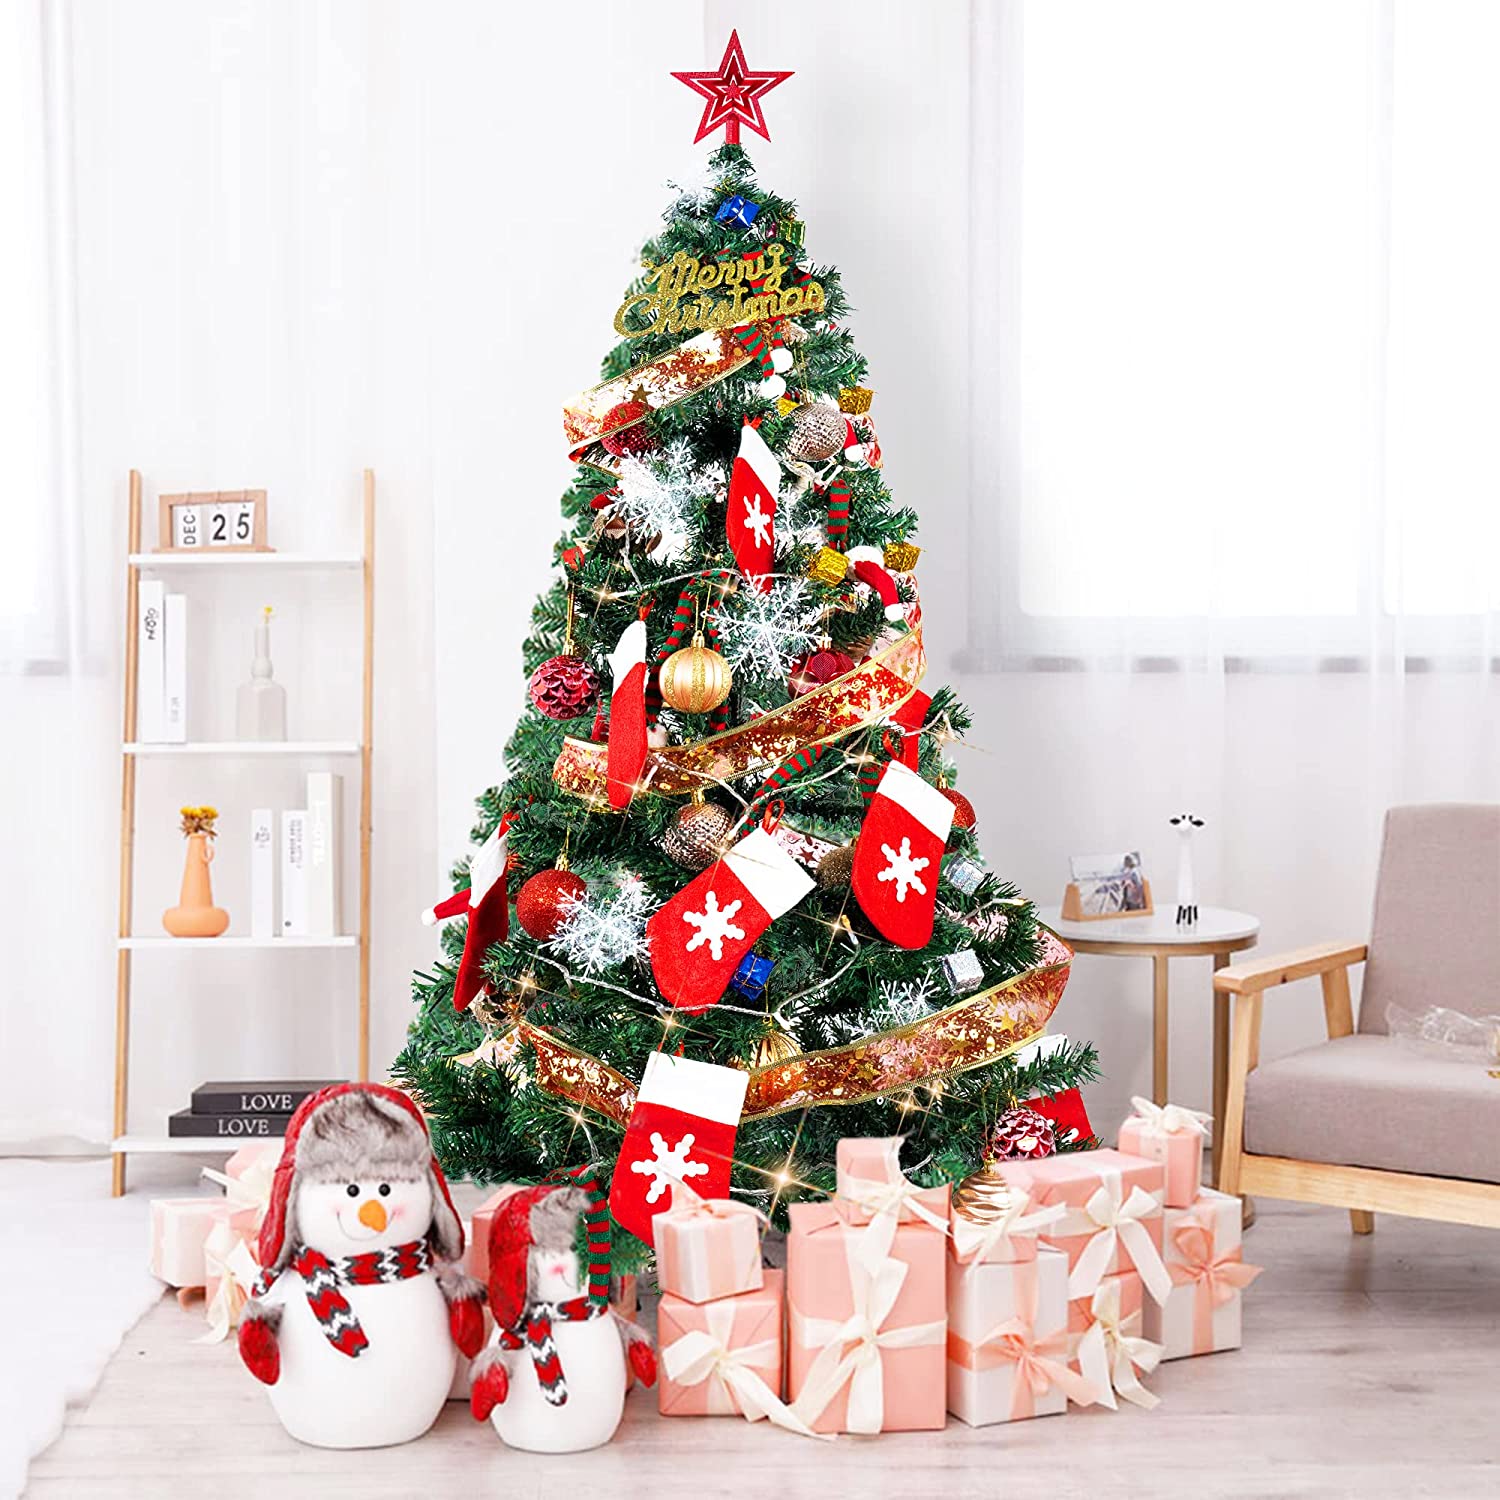 世界の人気ブランド Tvilbidvirk6クリスマスツリー 枝大幅増量タイプ 赤い実付き おしゃれなポリ成型葉混合クリスマスツリー 300CM  KSBMA